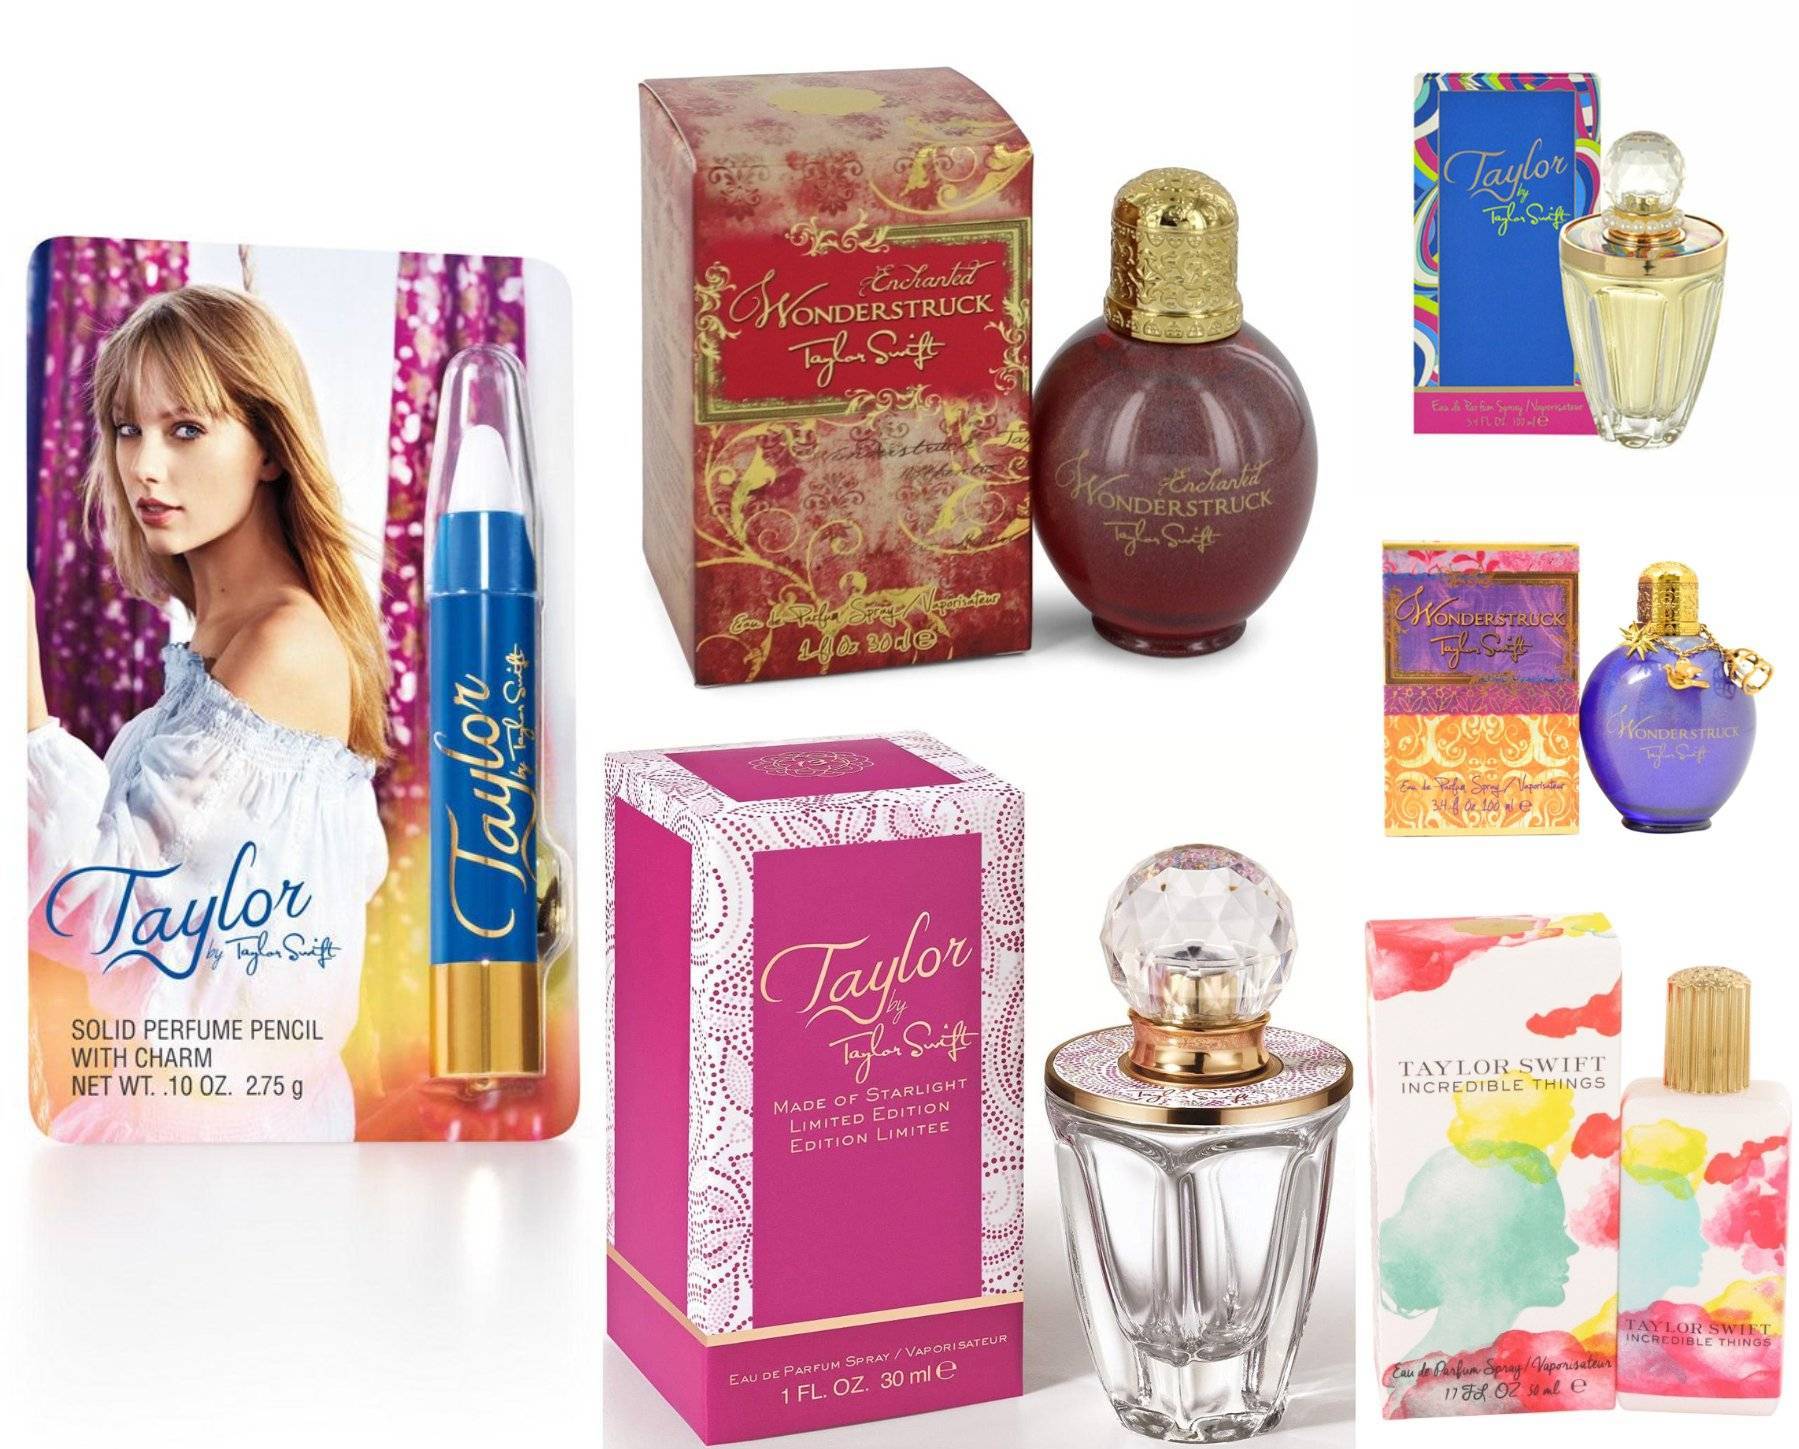 Taylor Swift se exprimă liber, creând parfumuri pentru toate gusturile. Cele mai apreciate parfumuri de lux ale artistei